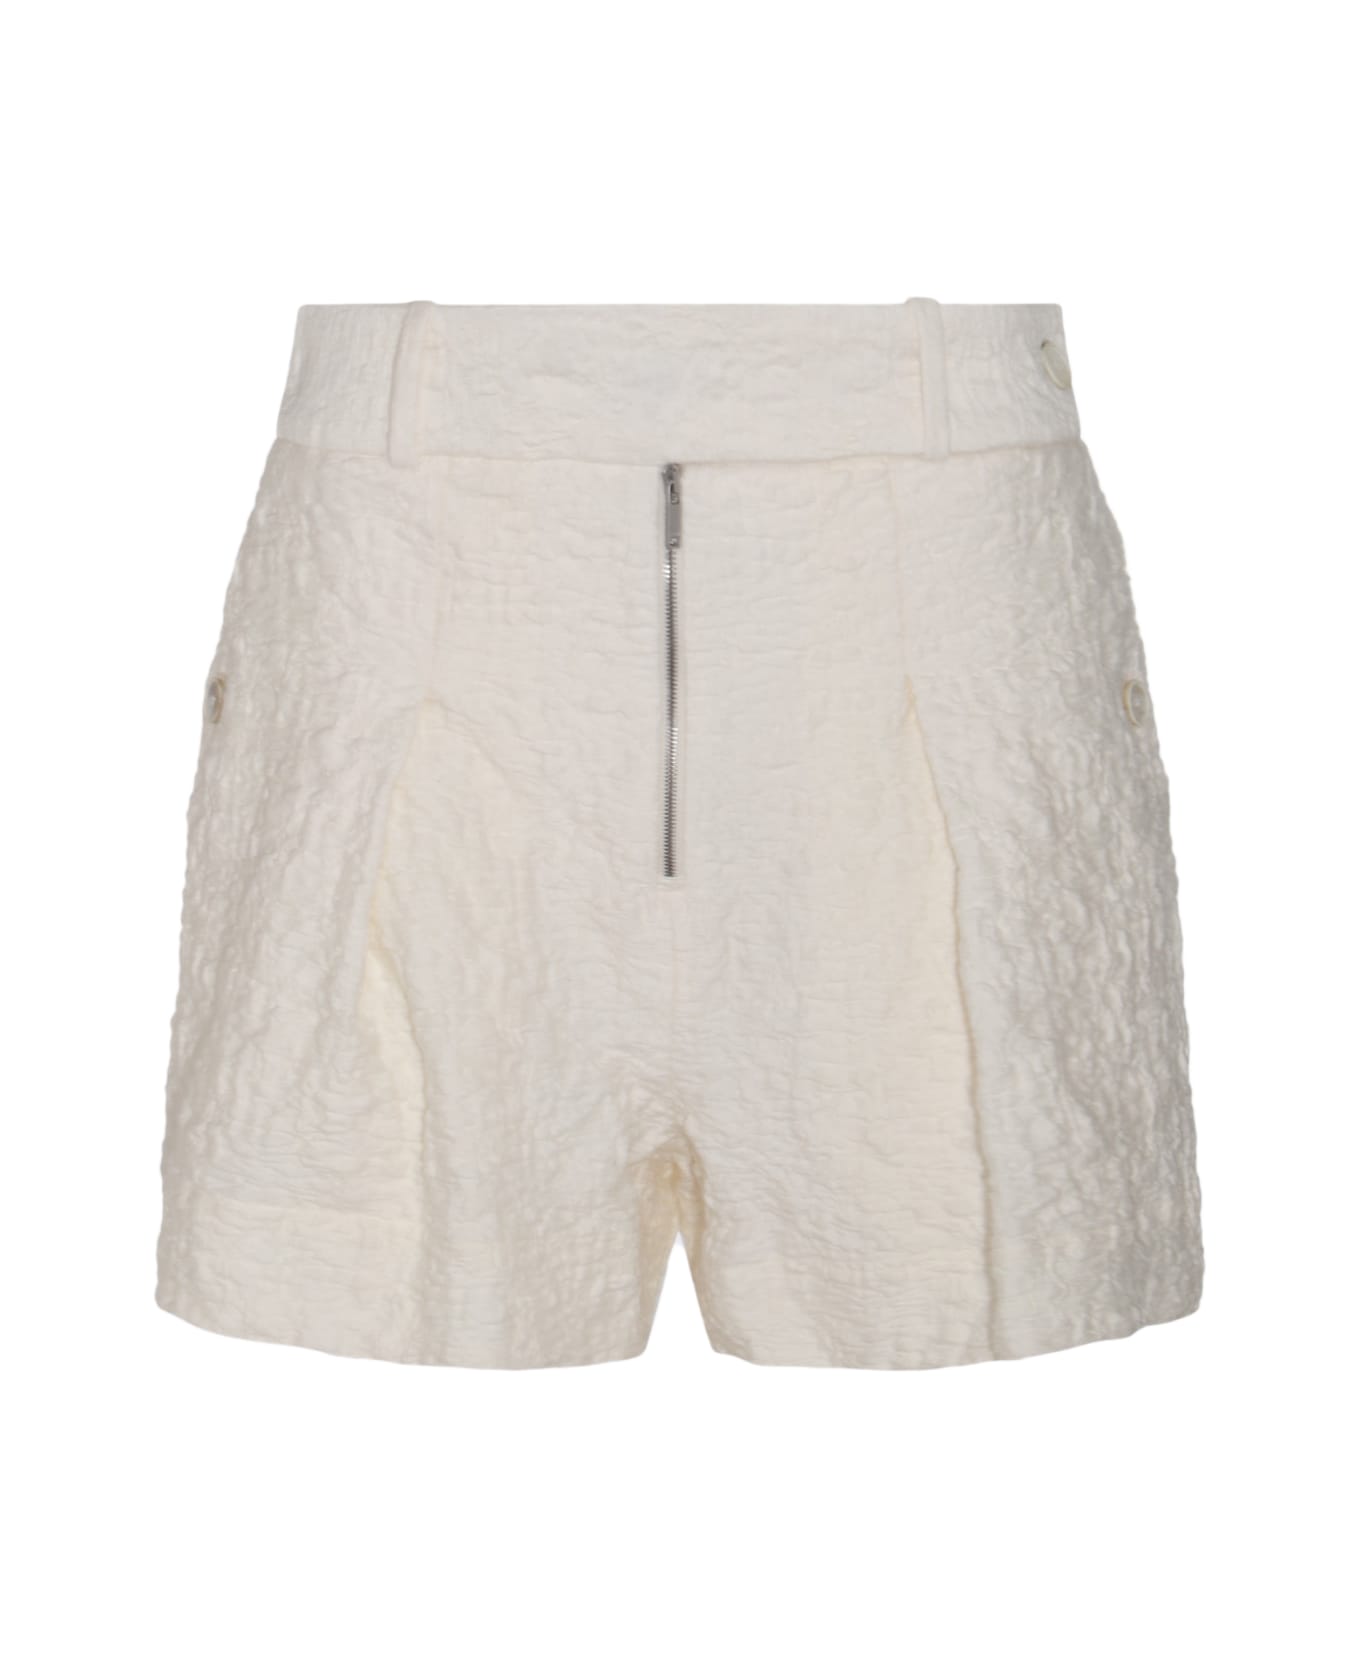 Jil Sander Porcelain Cotton Shorts - Panna